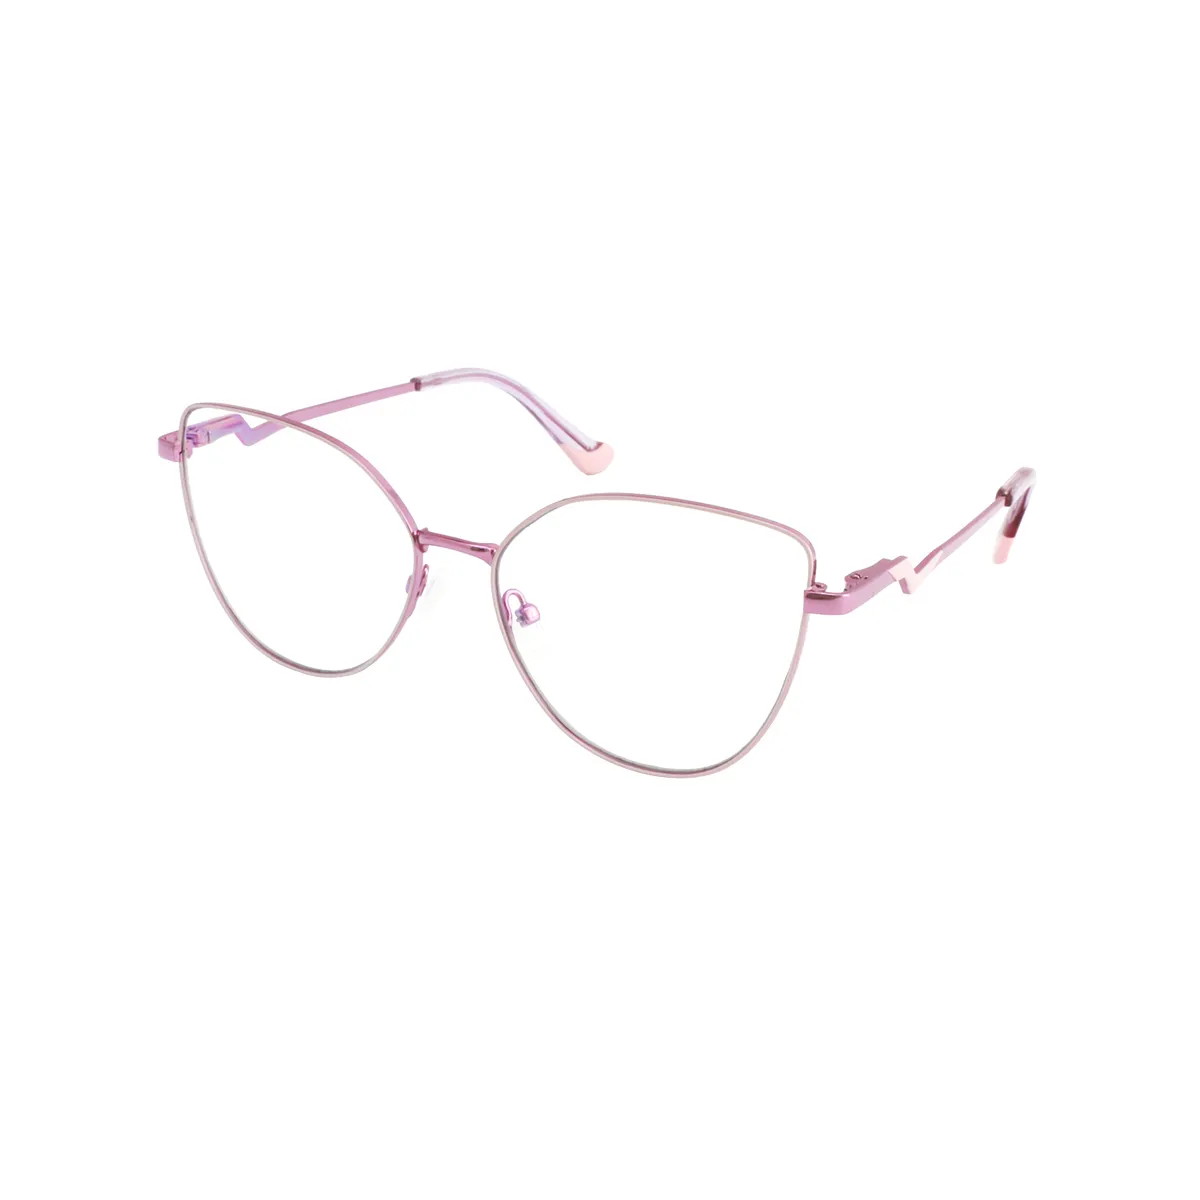 Alvina - Cat-eye Clear-Purple Glasses for Women